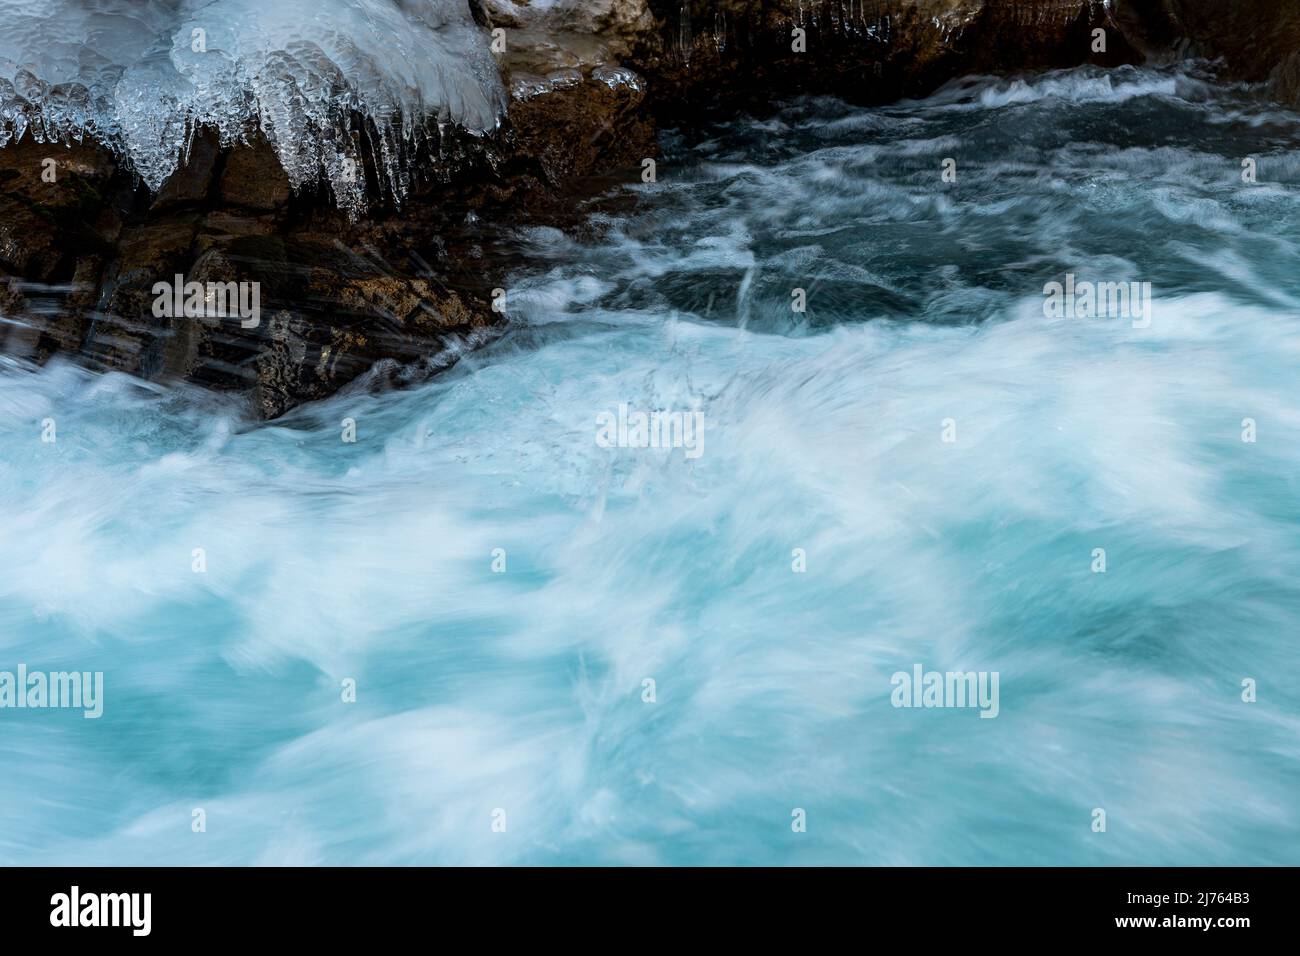 L'eau rapide du Rissbach forme du jet et du courant. Les structures de glace et les rochers formés sur la rive du ruisseau de montagne, bordent l'image. Pris en hiver au Tyrol, en Autriche dans l'Eng, près de l'Ahornboden. Banque D'Images